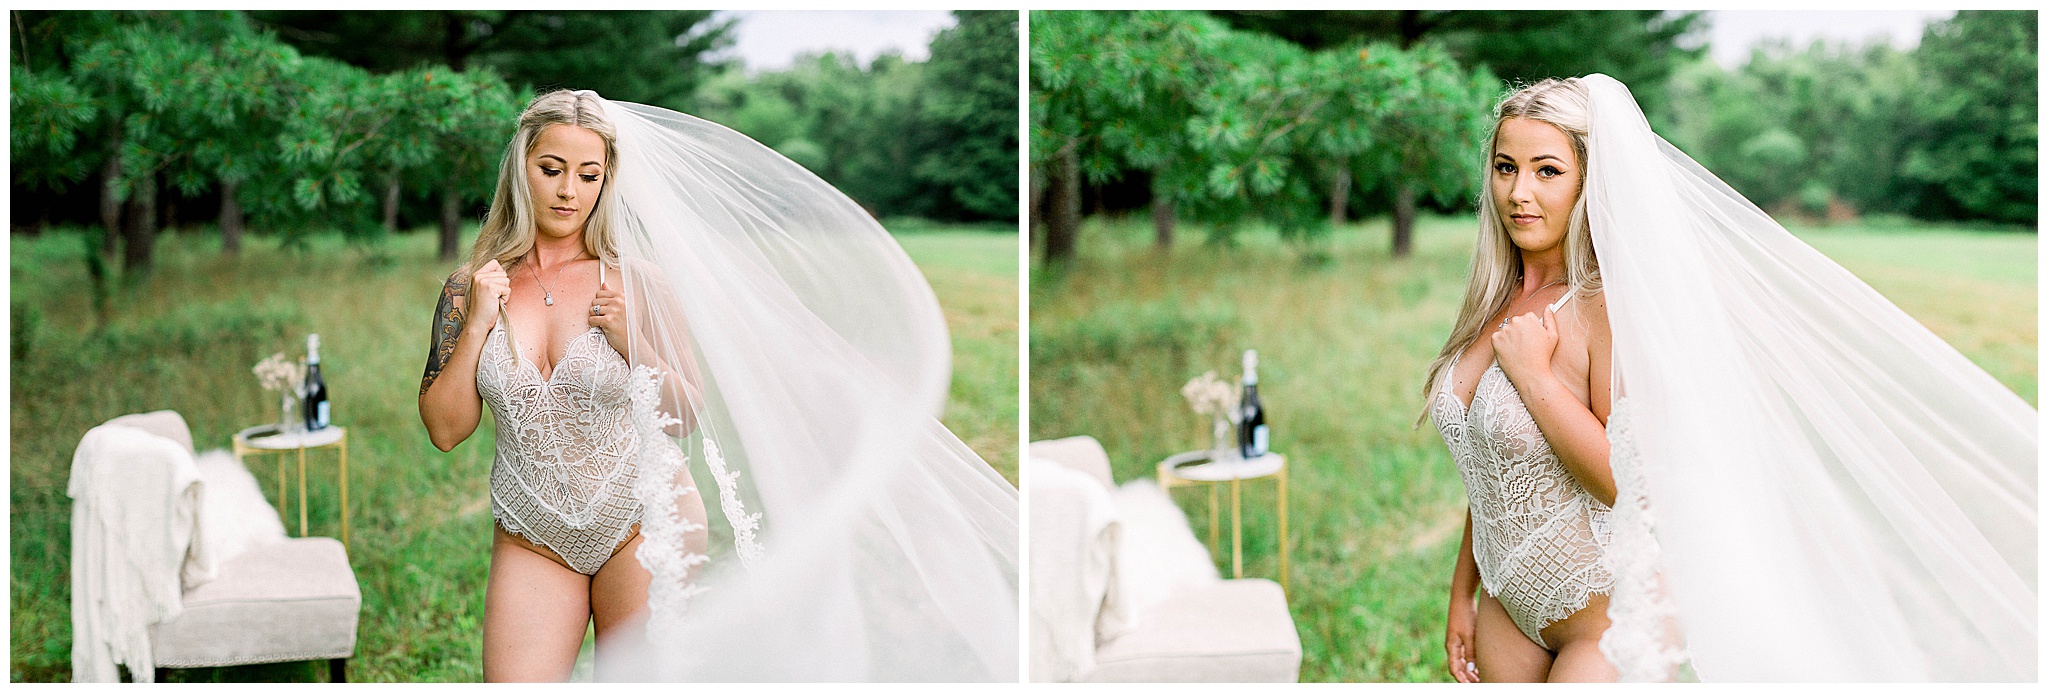 Bridal Lingerie Photoshoot